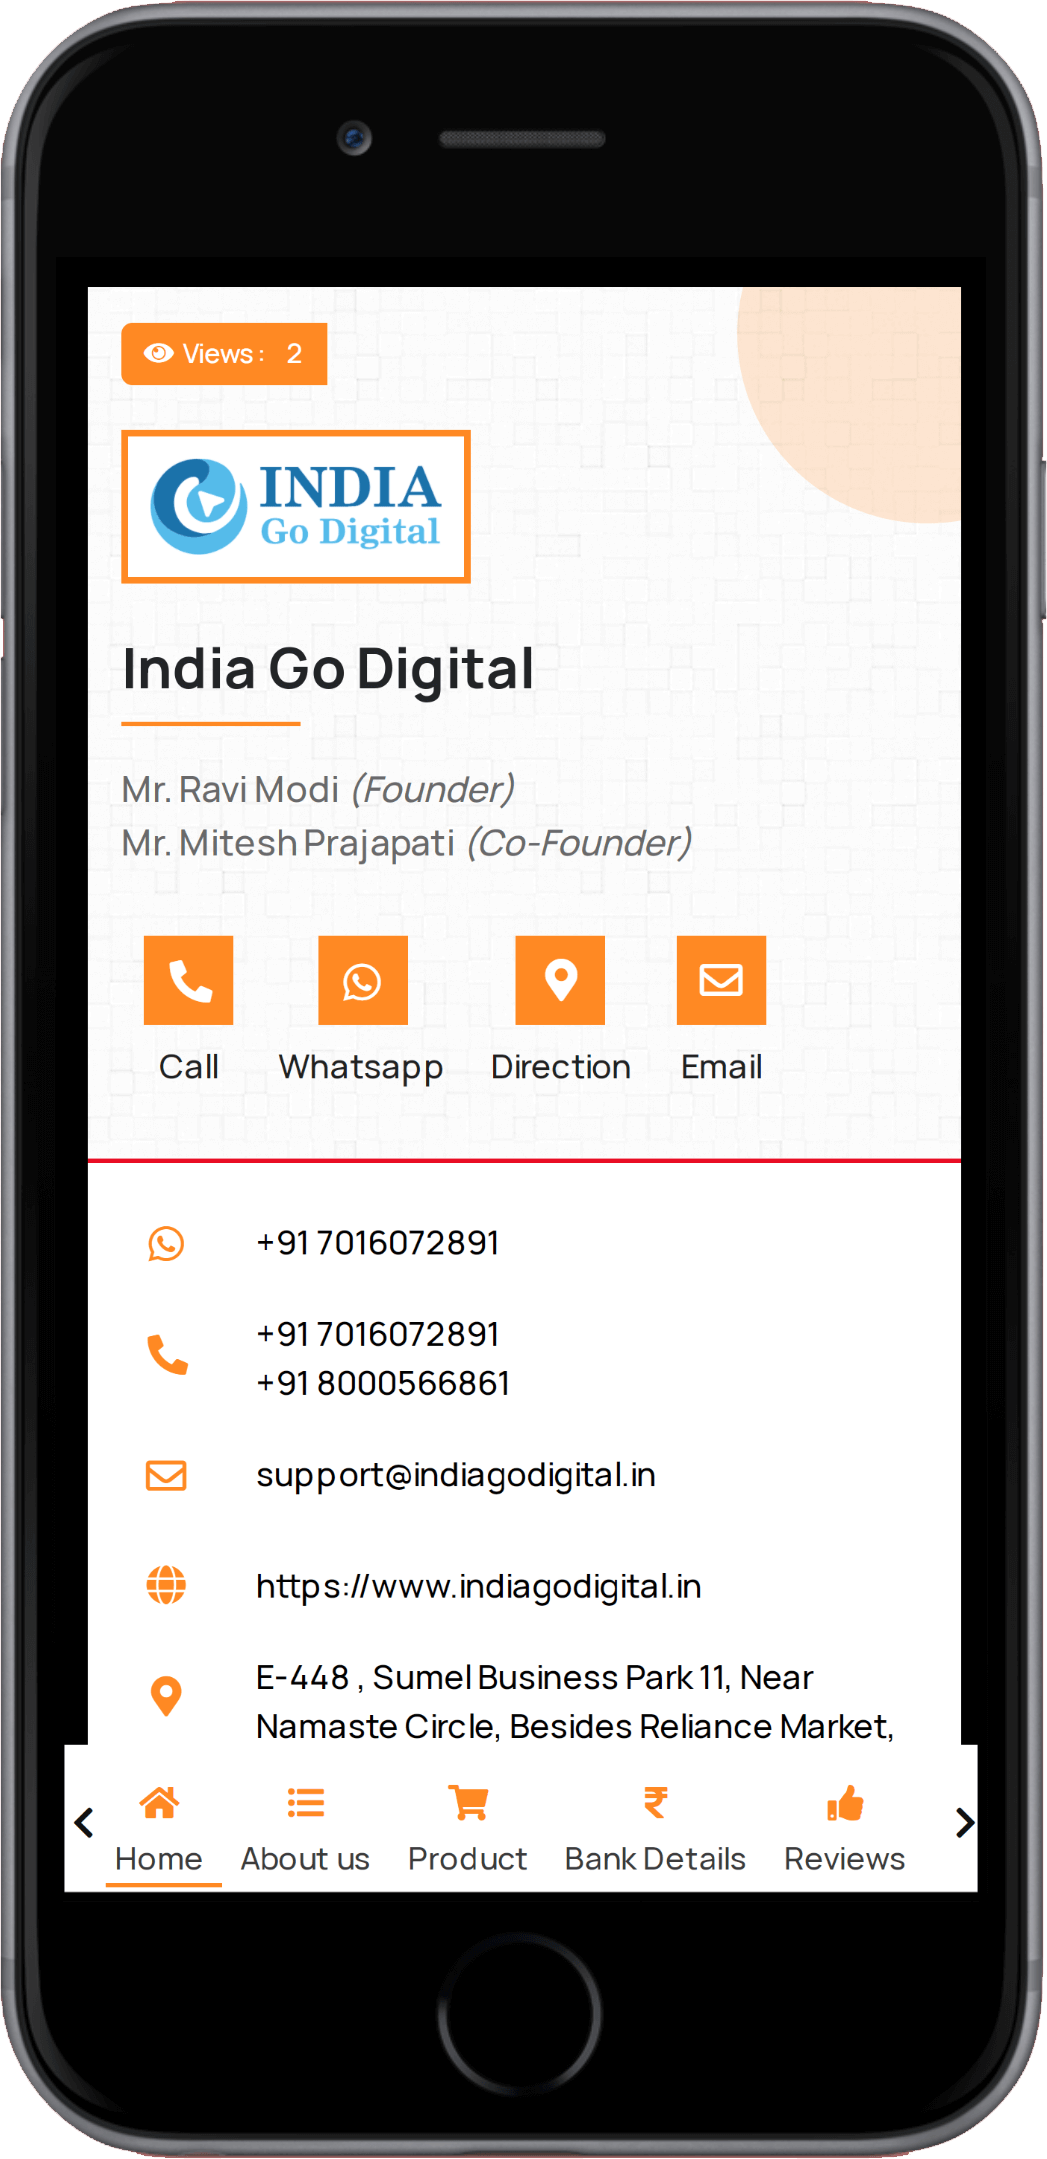 India Go Digital